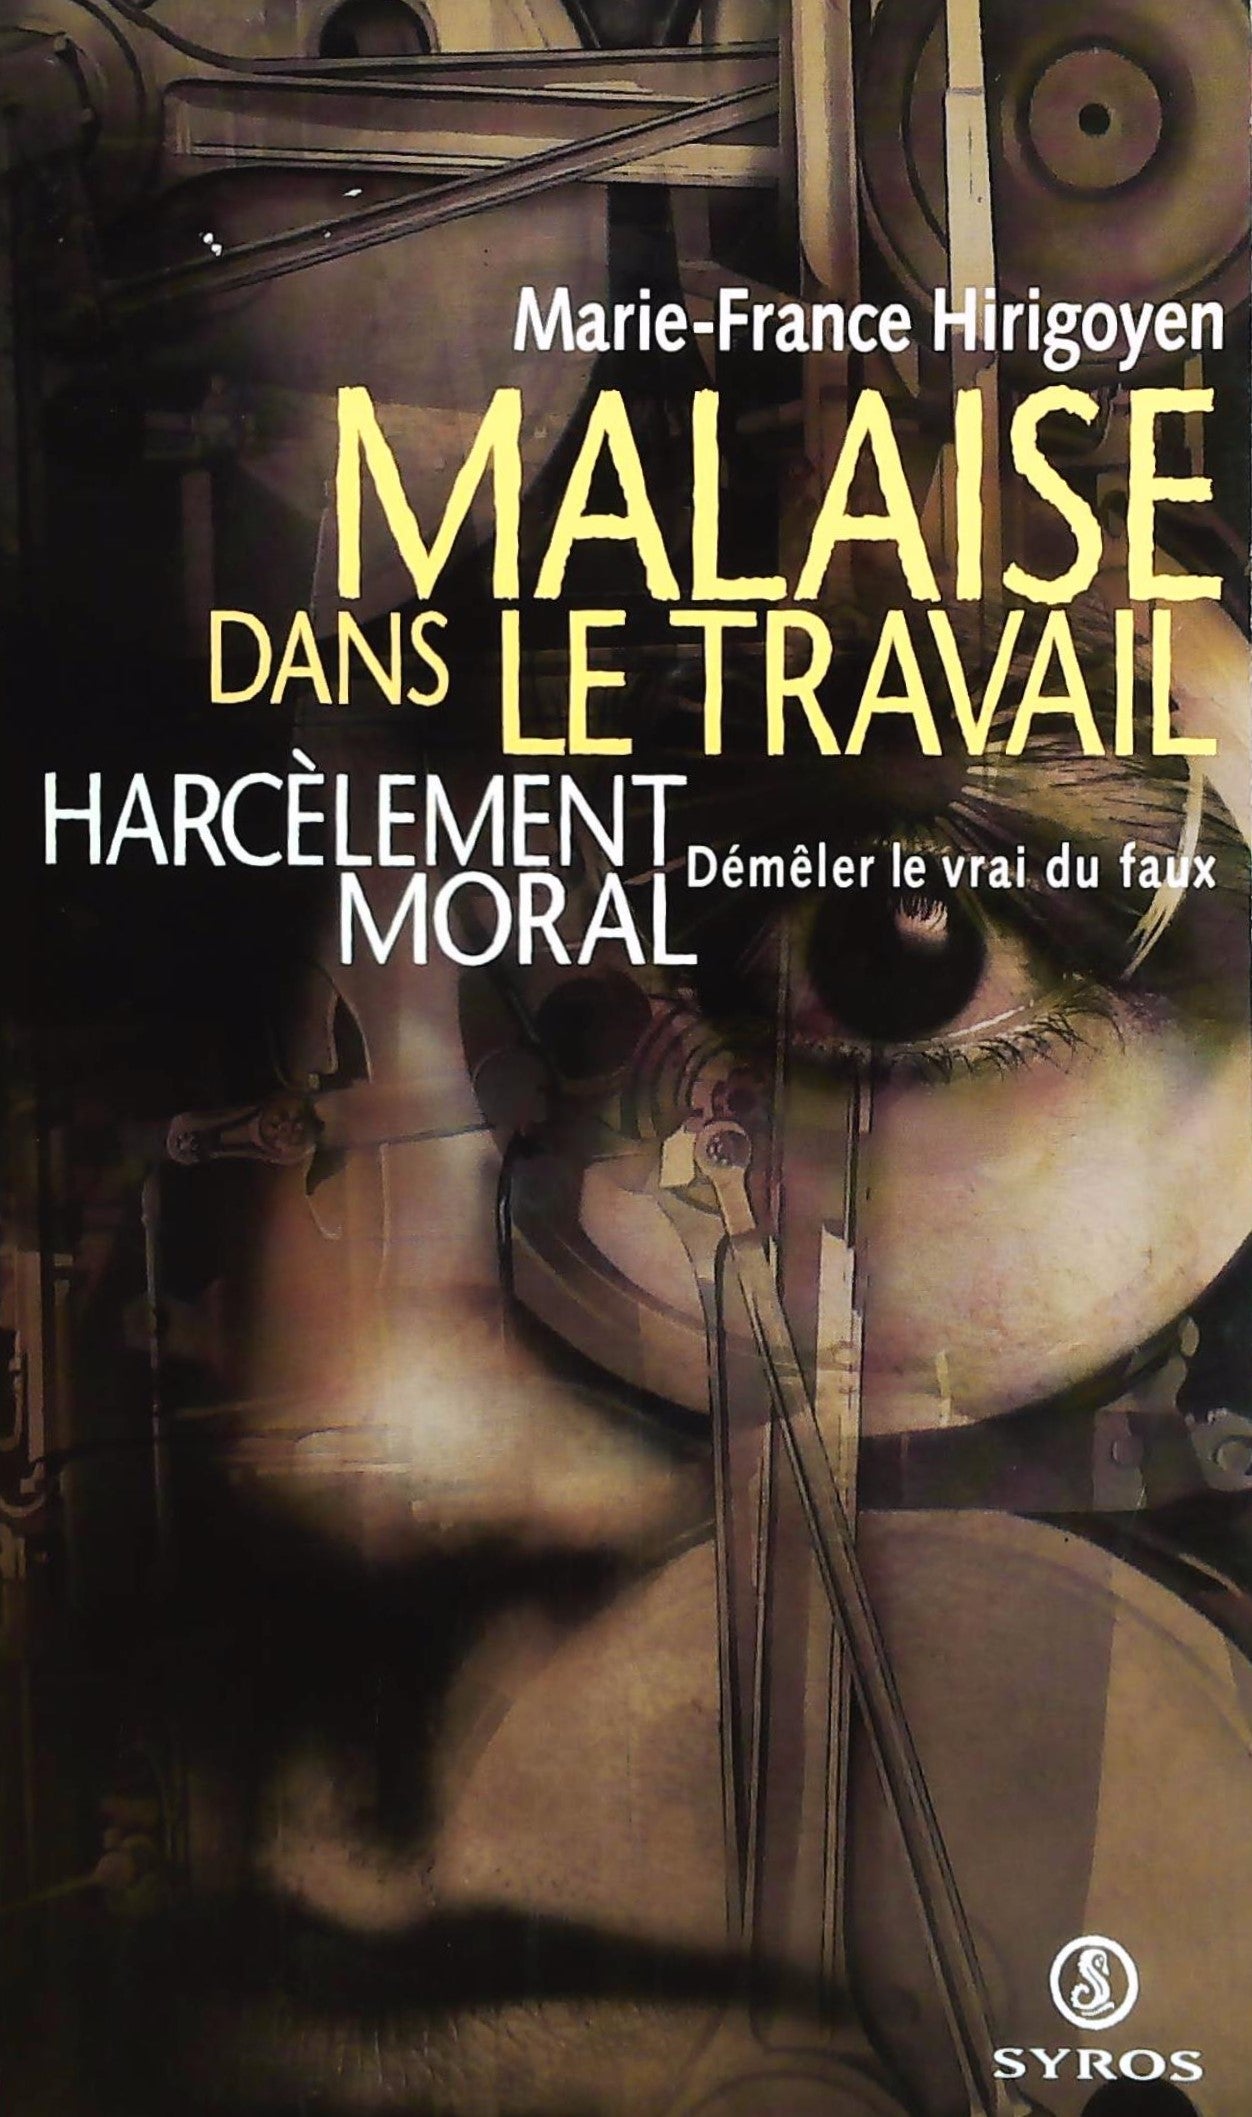 Livre ISBN 2841468887 Malaise dans le travail : Harcèlement moral, démêler le vrai du faux (Marie-France Hirigoyen)